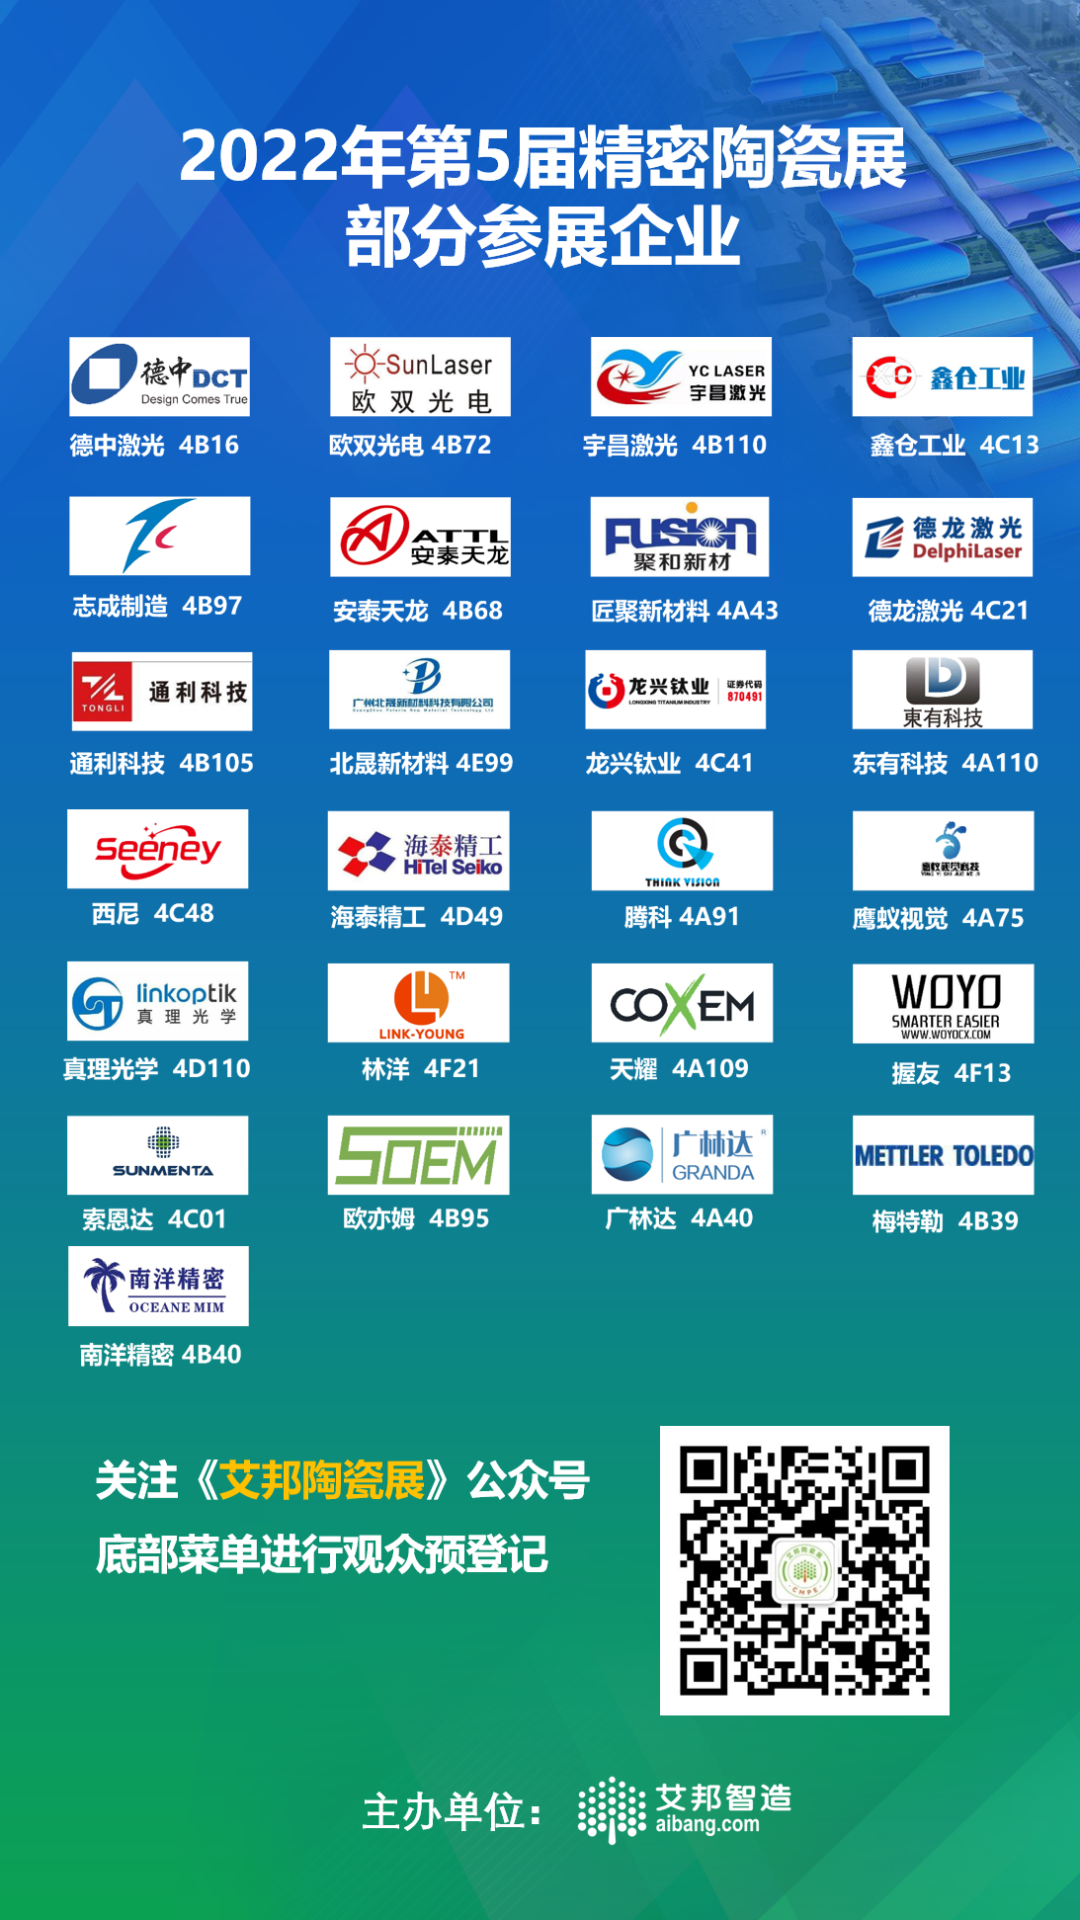 深圳国际电子展，MLCC和LTCC元器件企业纷纷亮相